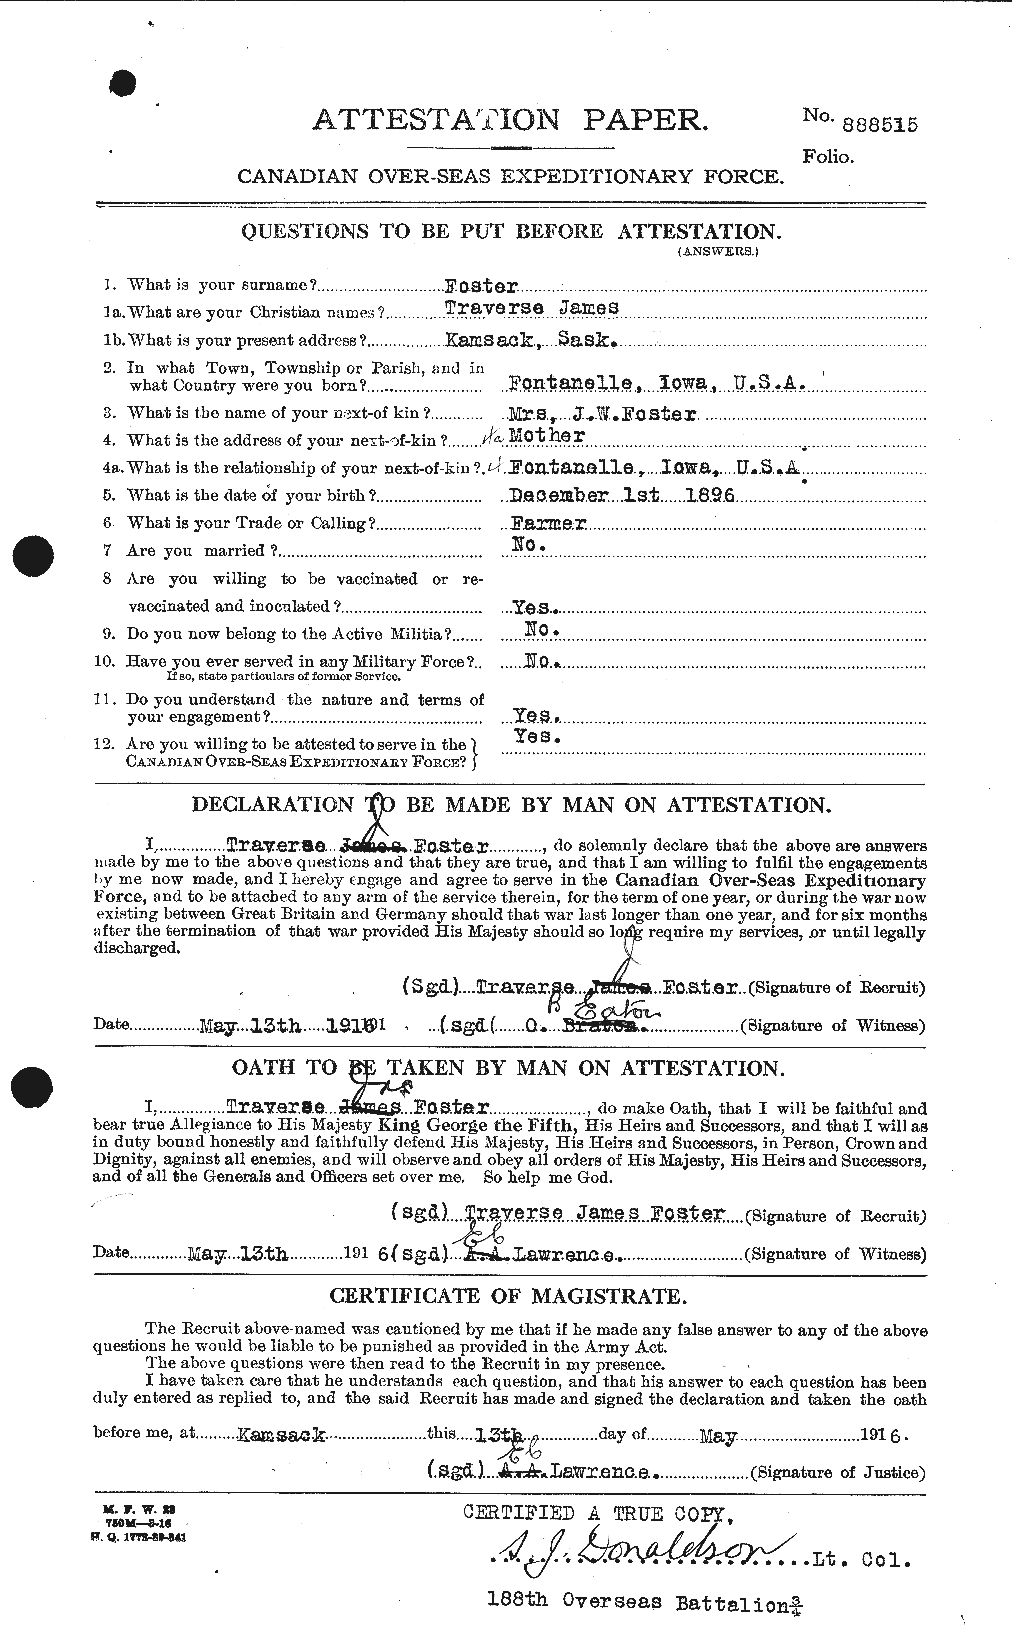 Dossiers du Personnel de la Première Guerre mondiale - CEC 335247a